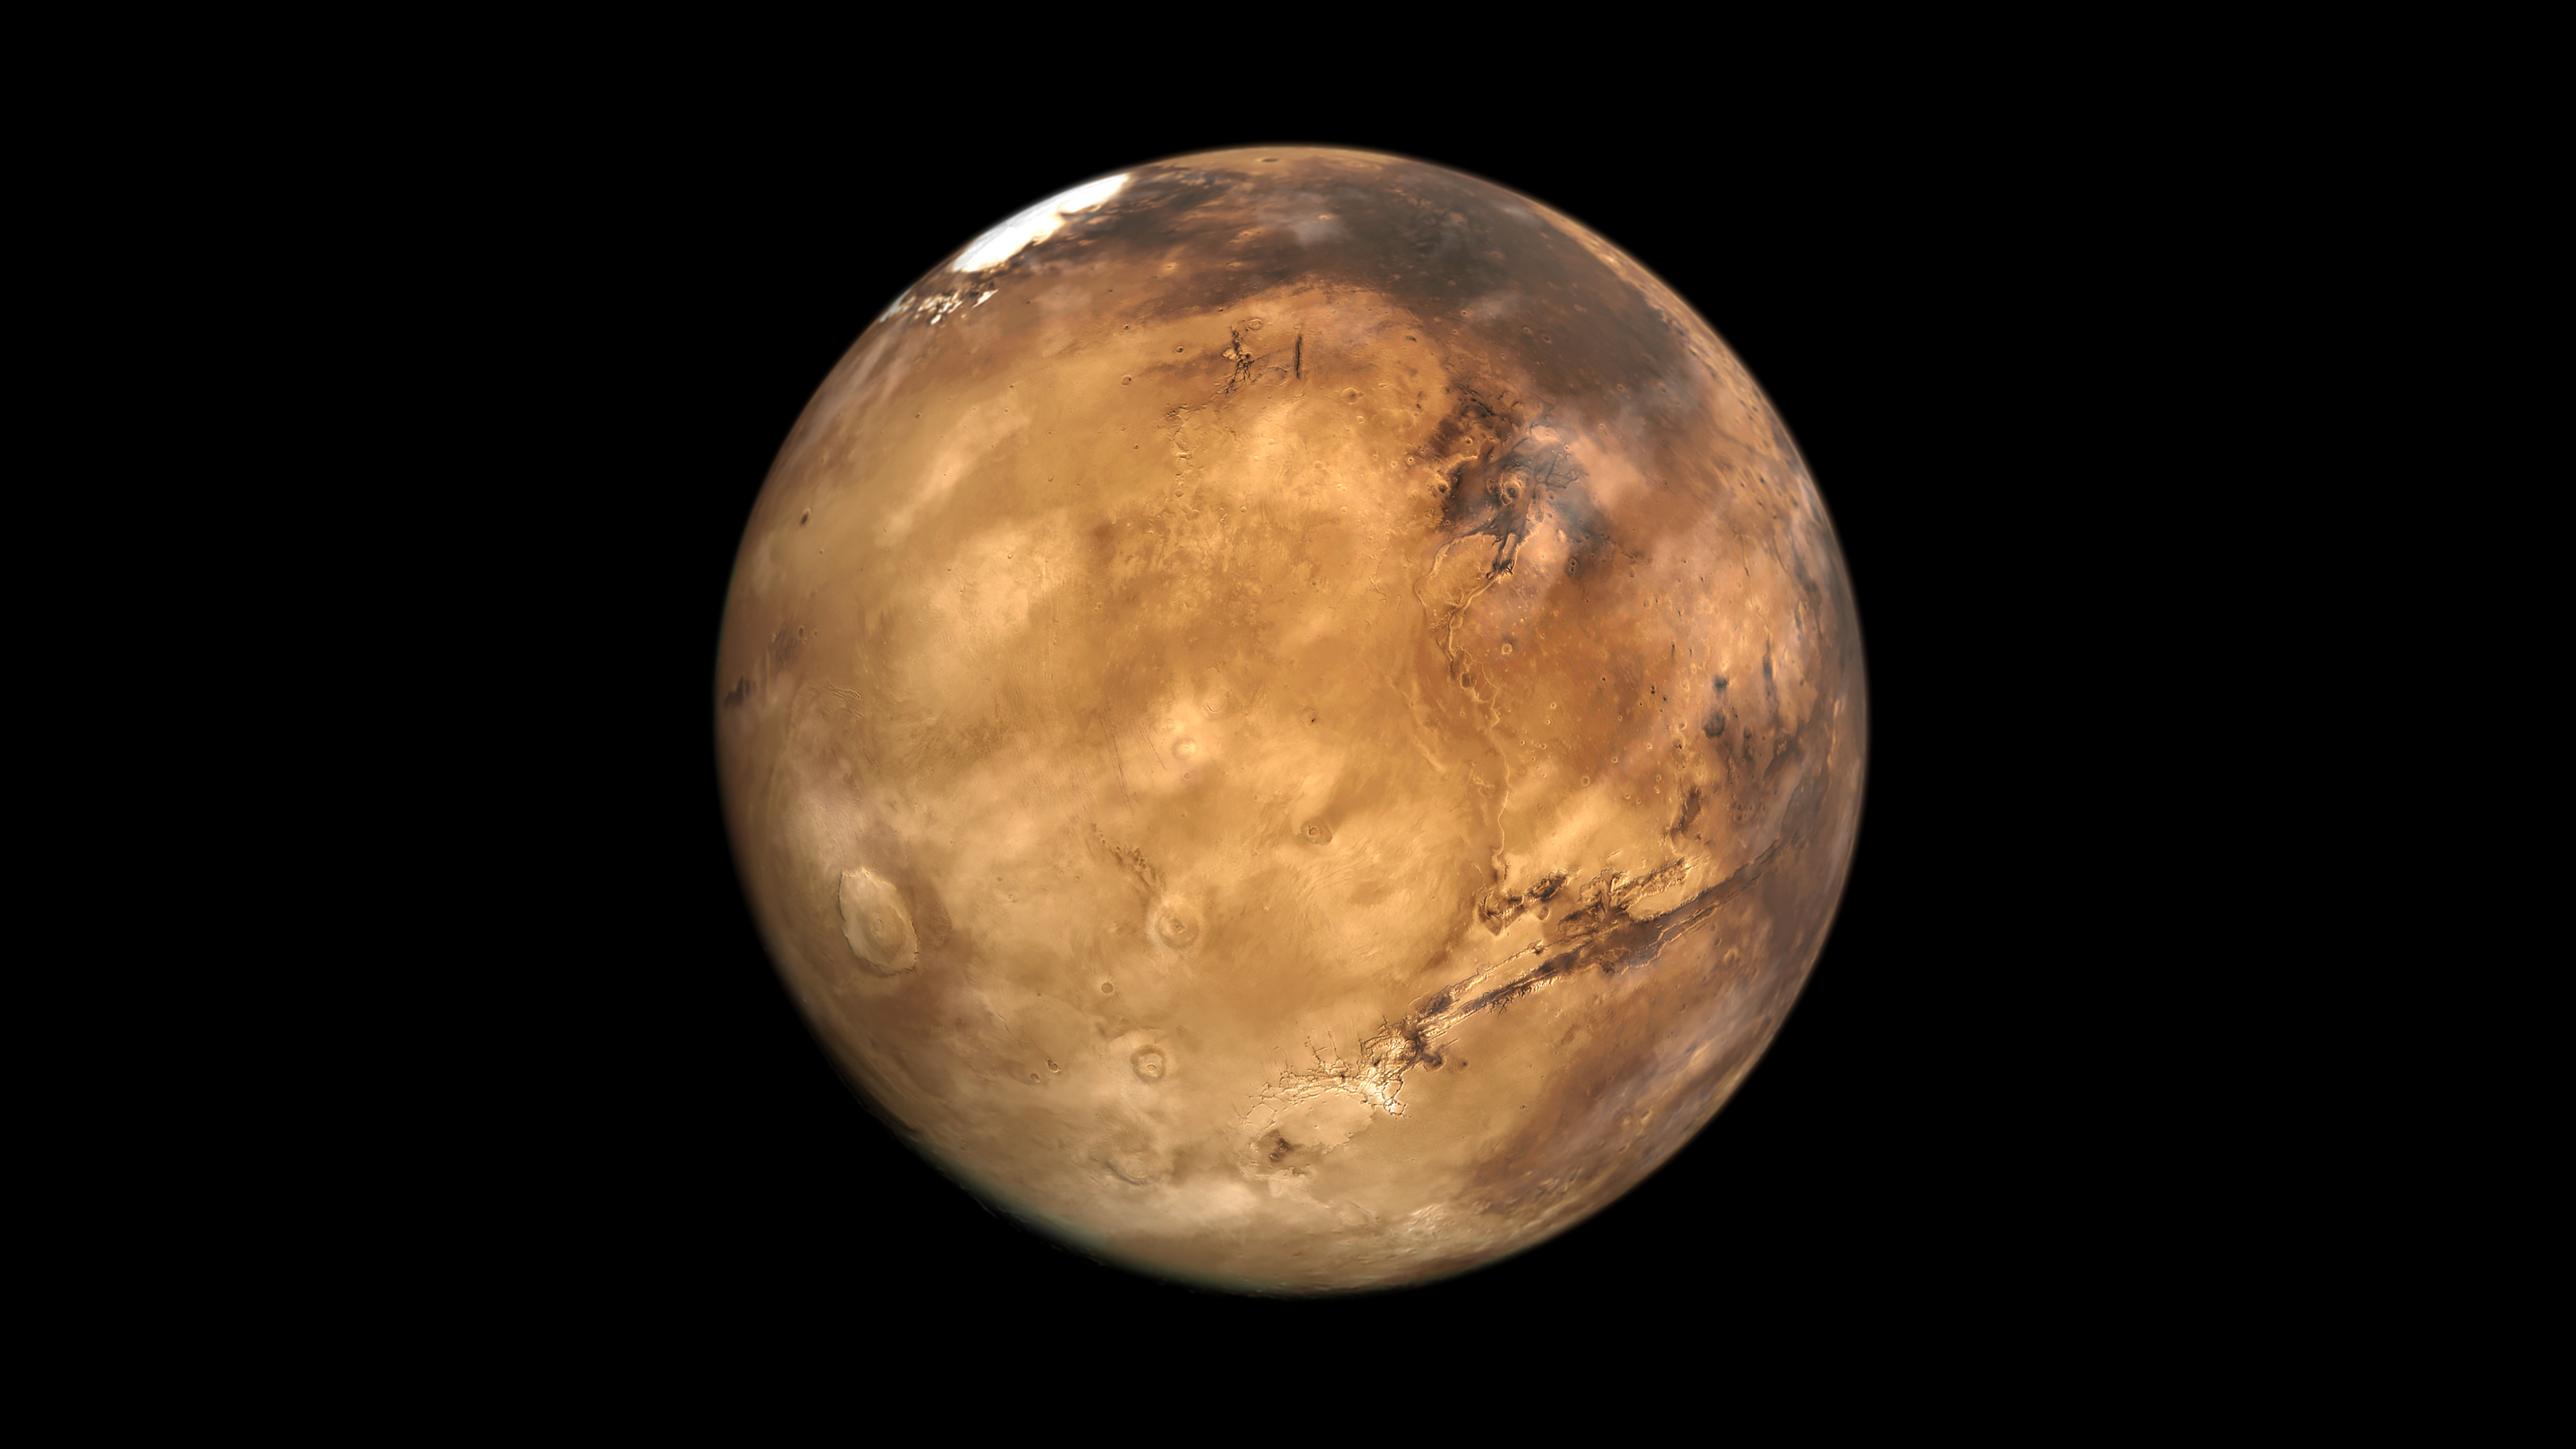 Обои Марс с водой картинки на рабочий стол на тему Космос - скачать бесплатно